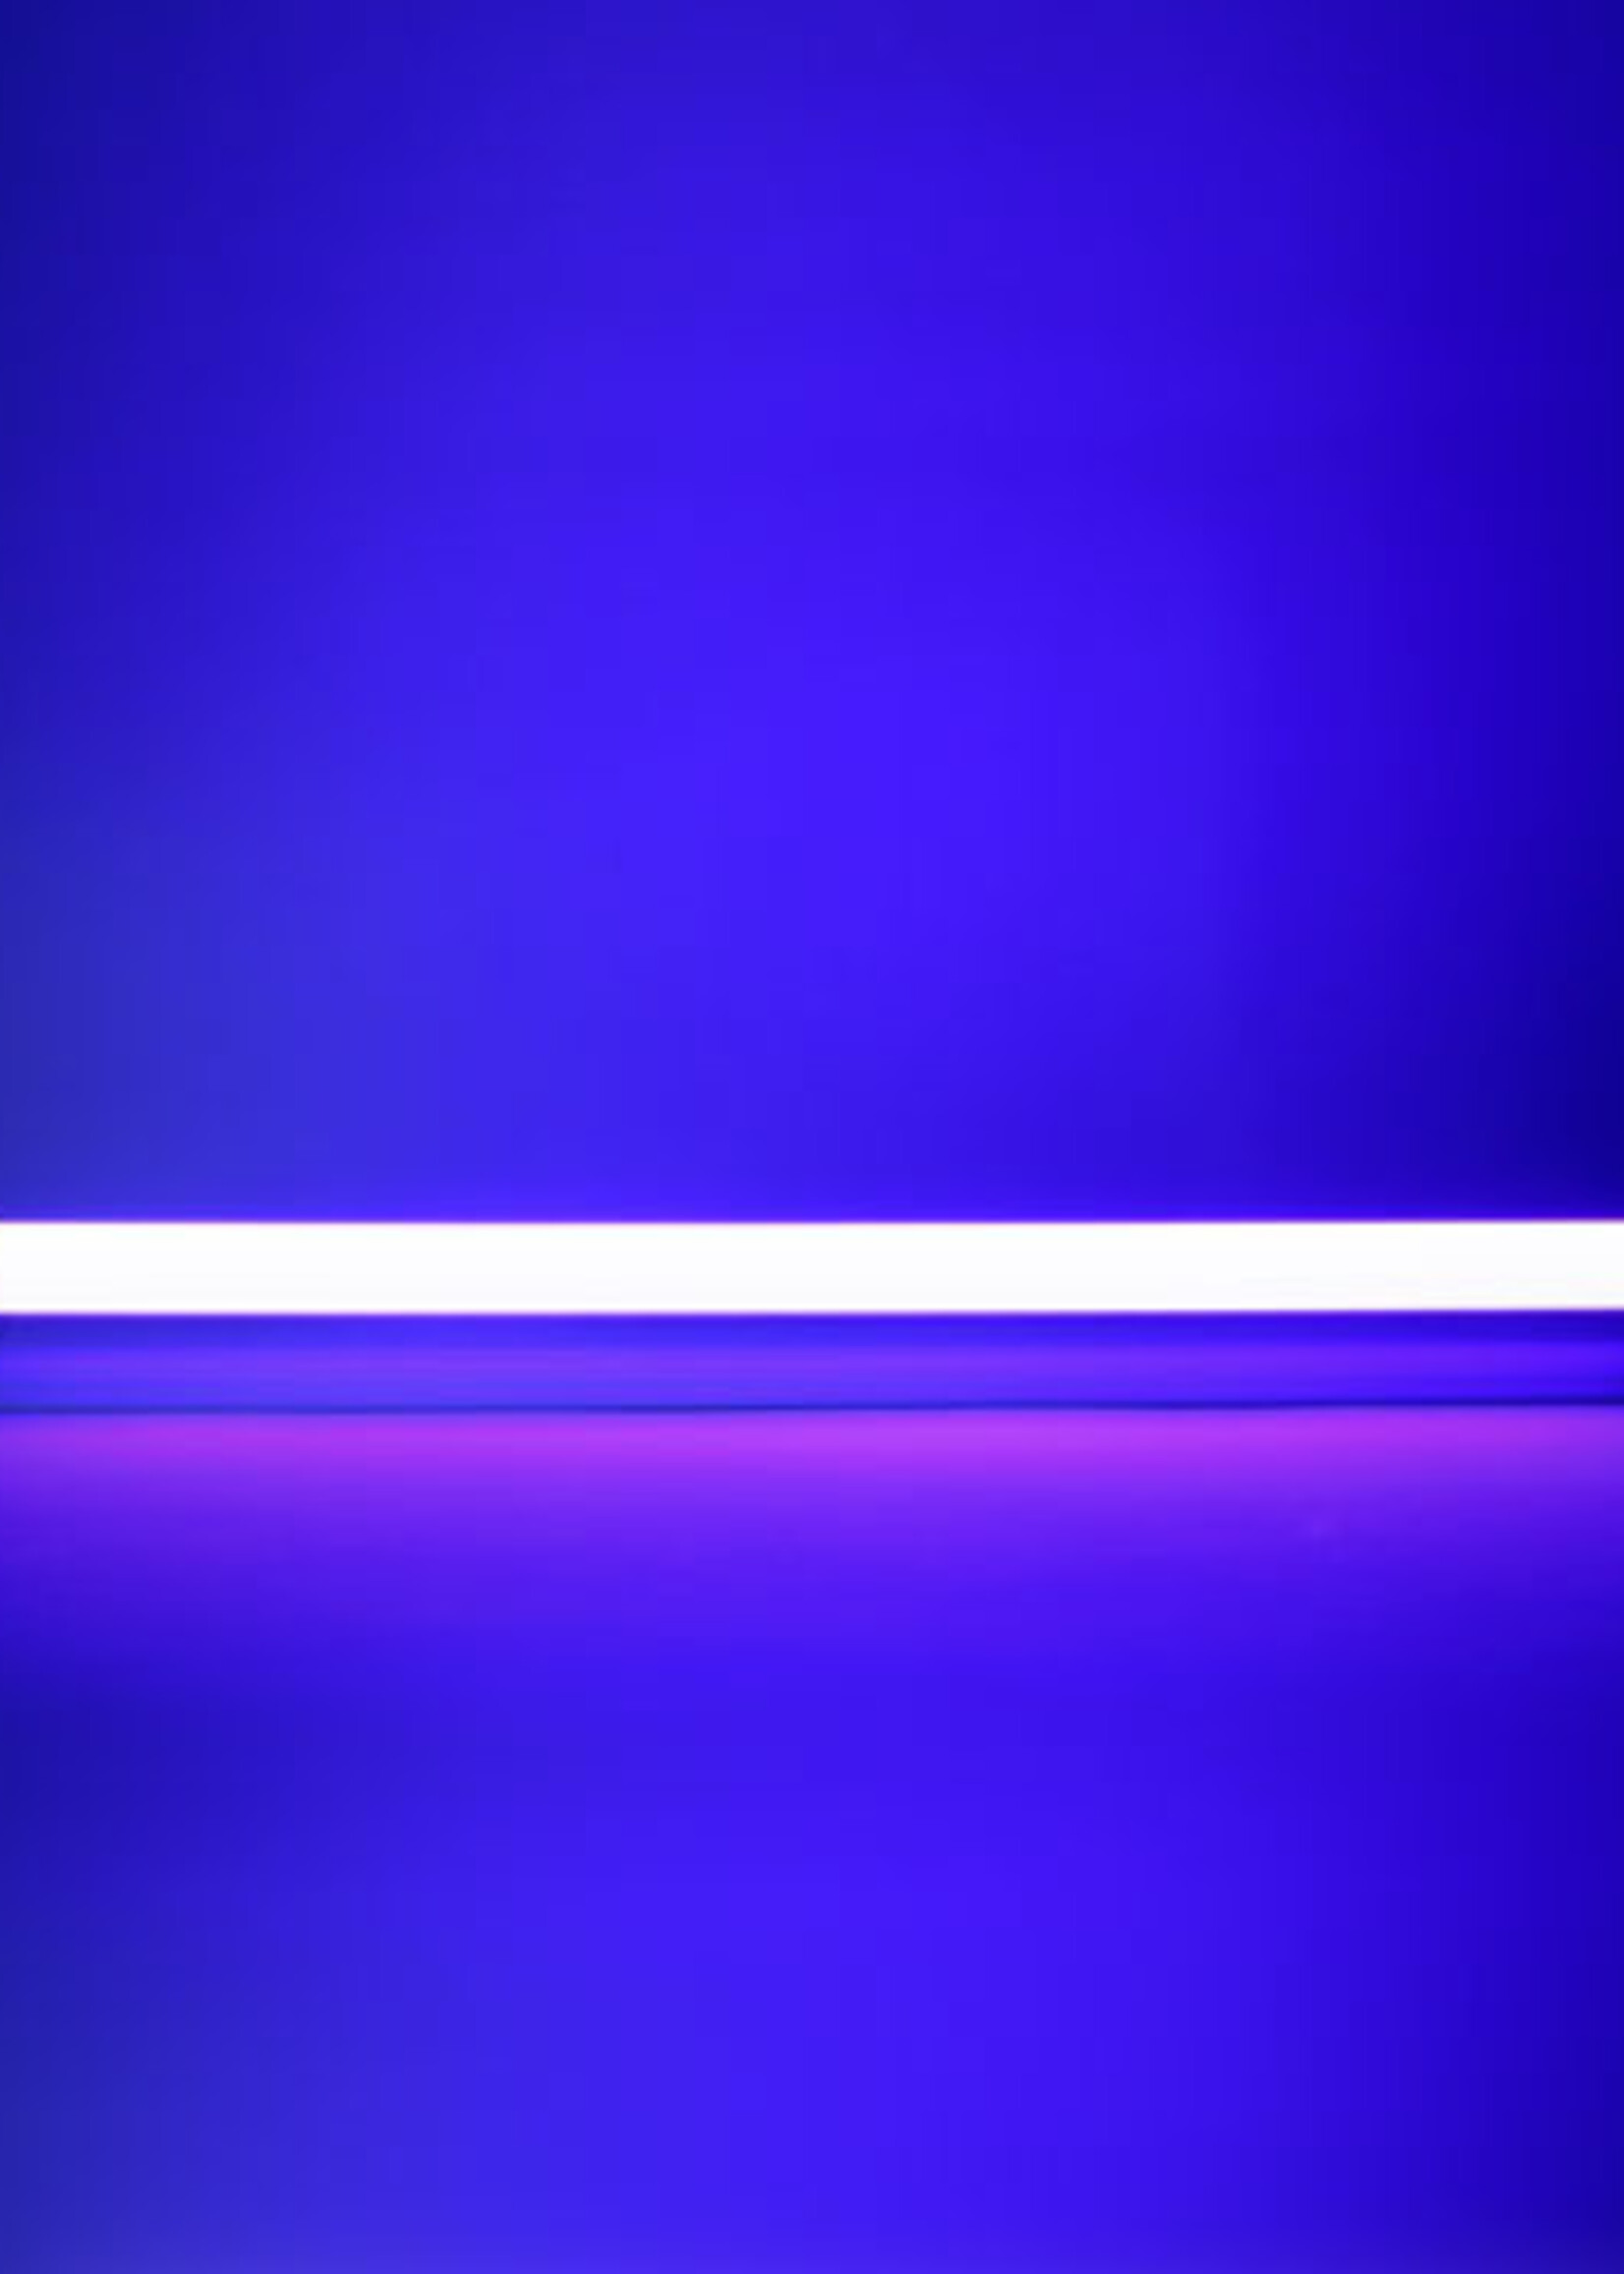 LEDWINKEL-Online Slimme WiFi RGB LED TL Buis 120cm Gekleurd licht 18W